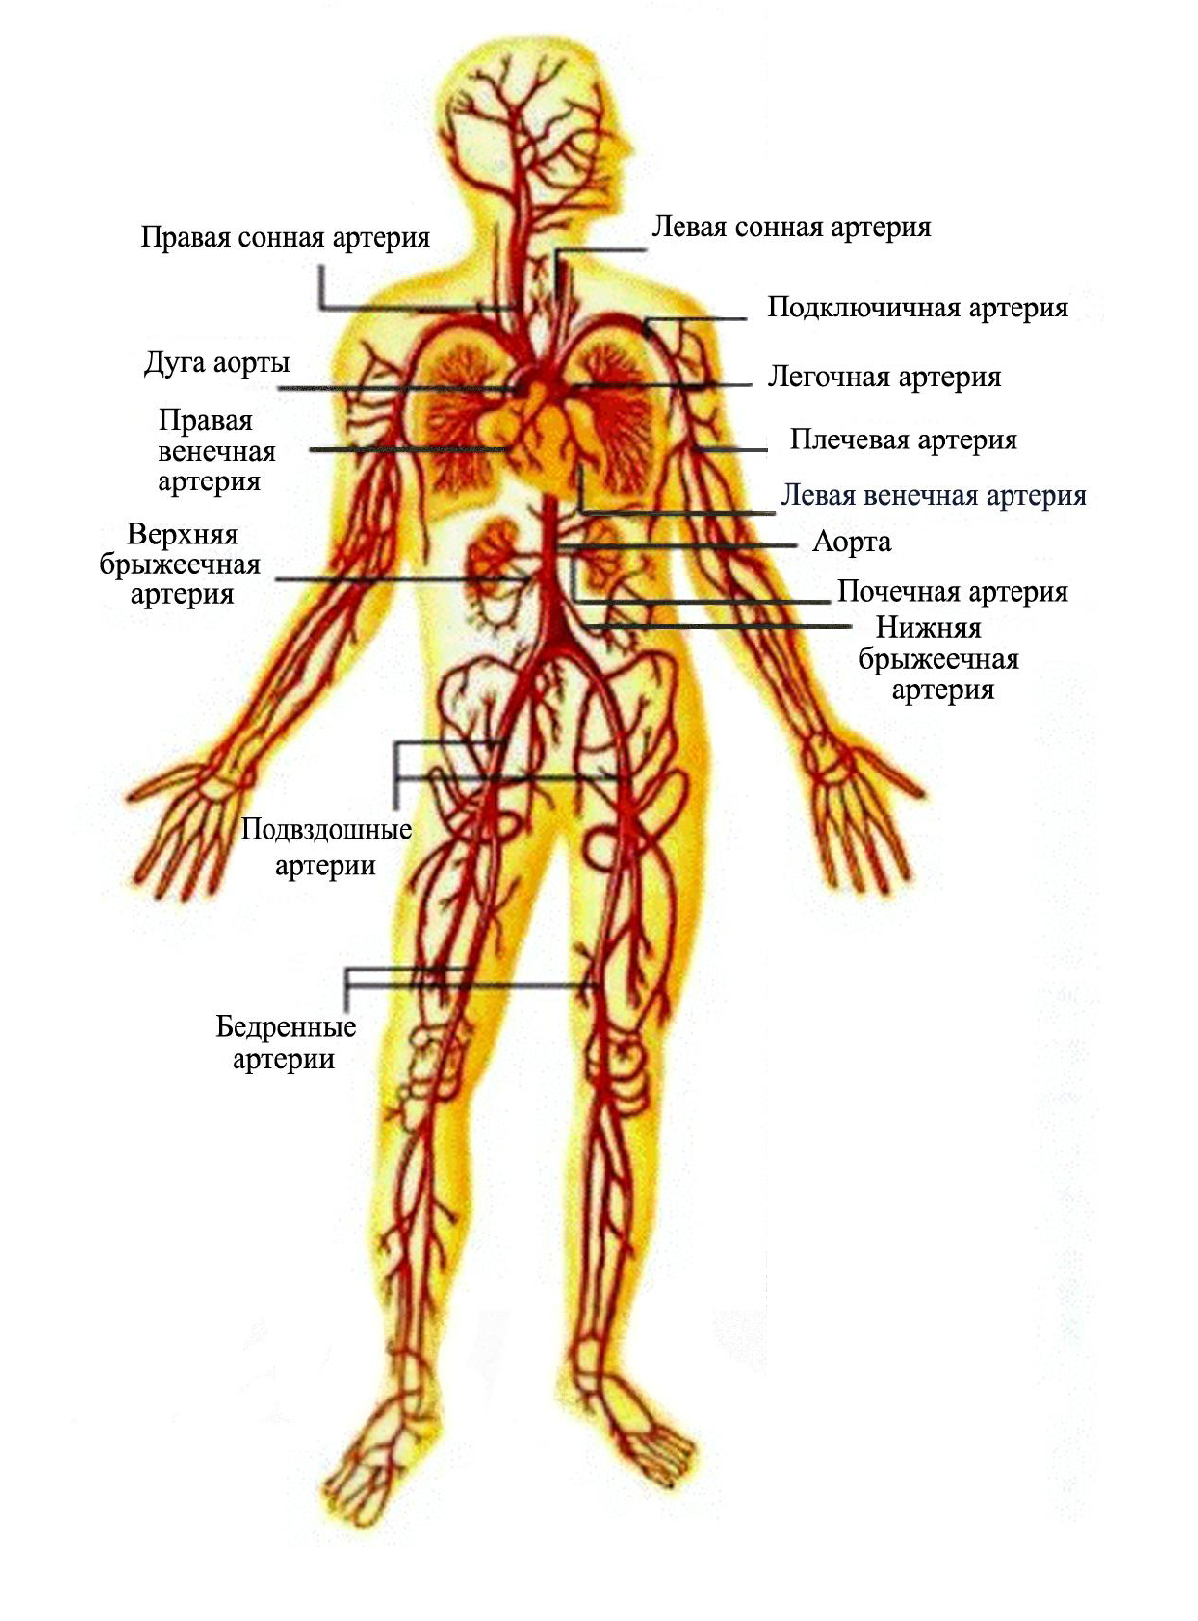 Артерии и вены тела. Артериальная система человека анатомия с подписями. Венозная система человека анатомия схема расположения. Венозная и артериальная система человека схема. Артериальная система человека анатомия рисунок.